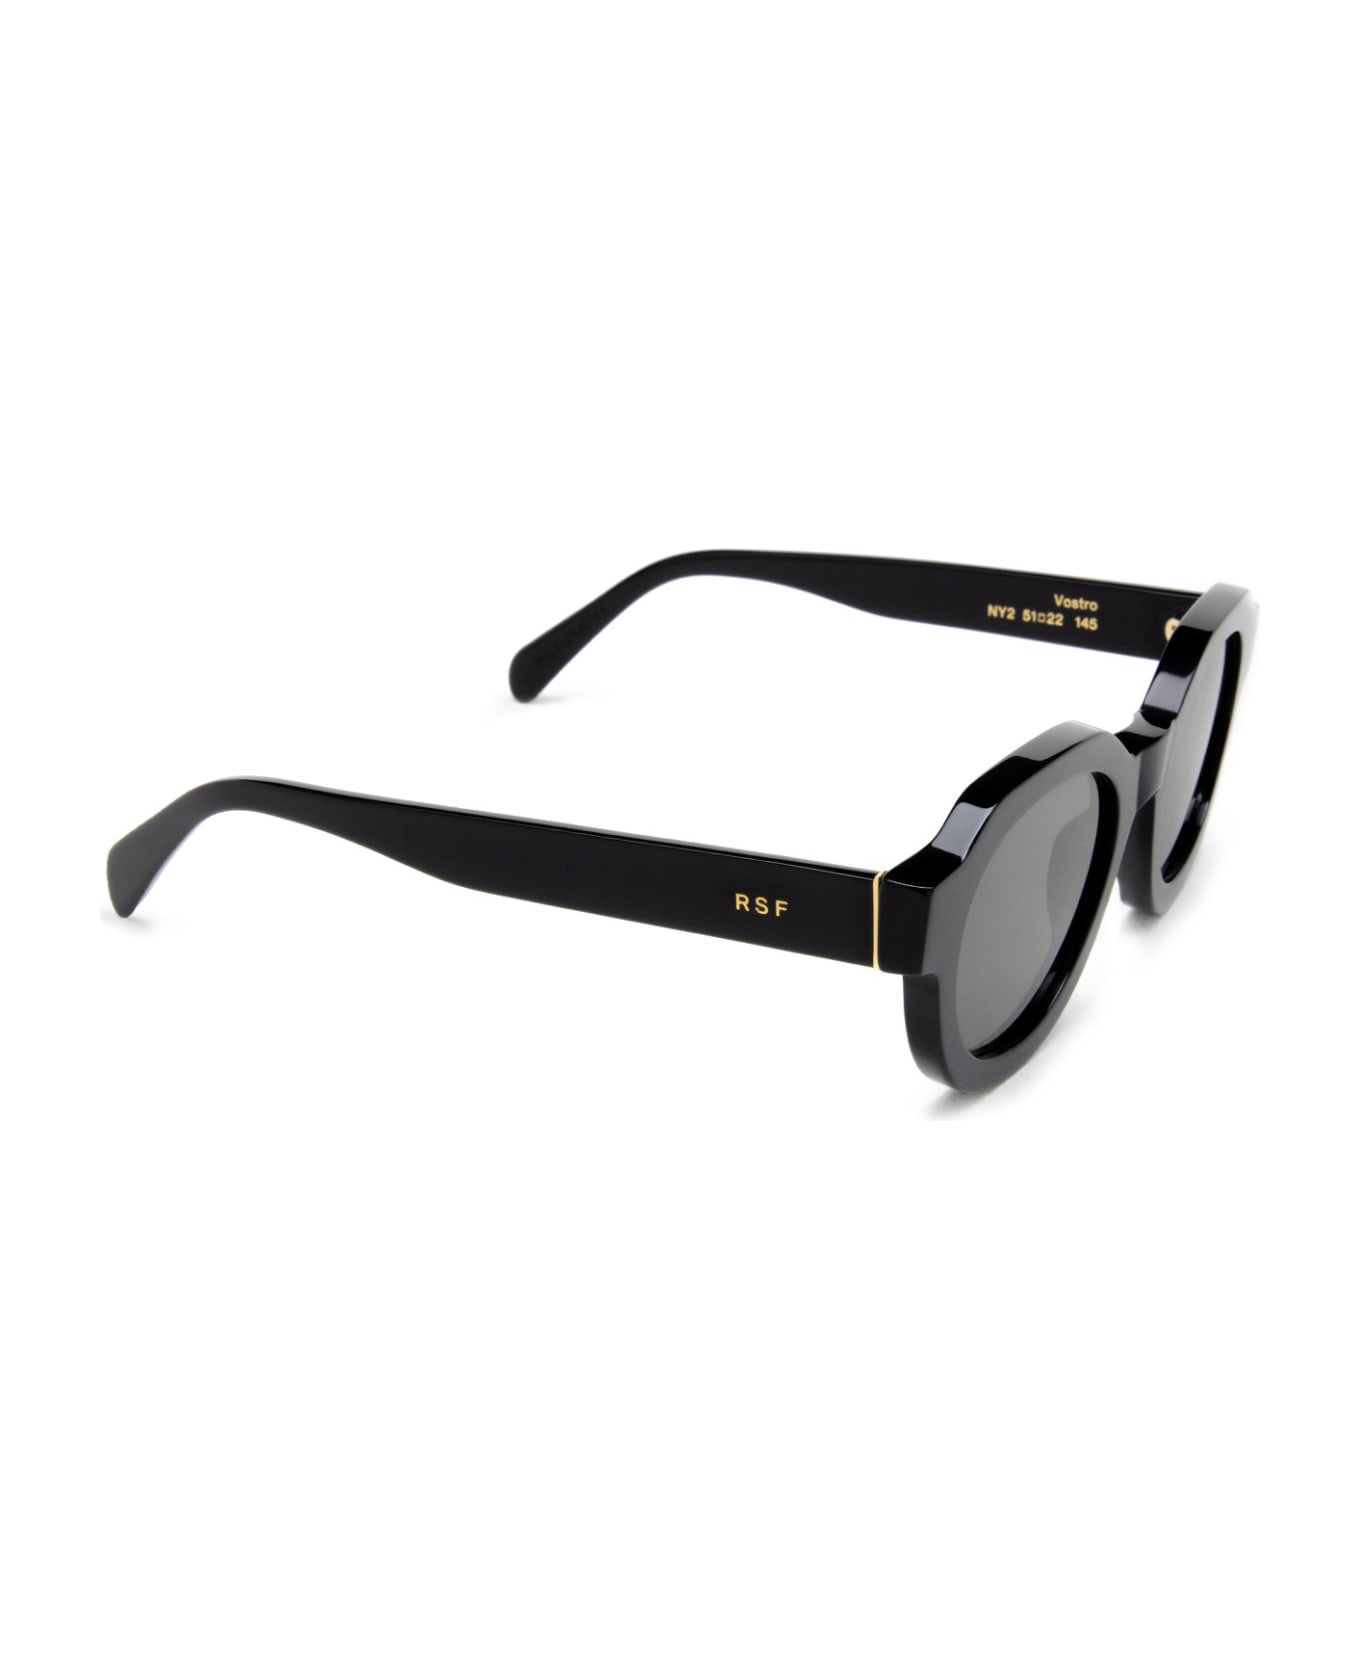 RETROSUPERFUTURE Vostro Black Sunglasses - Black サングラス